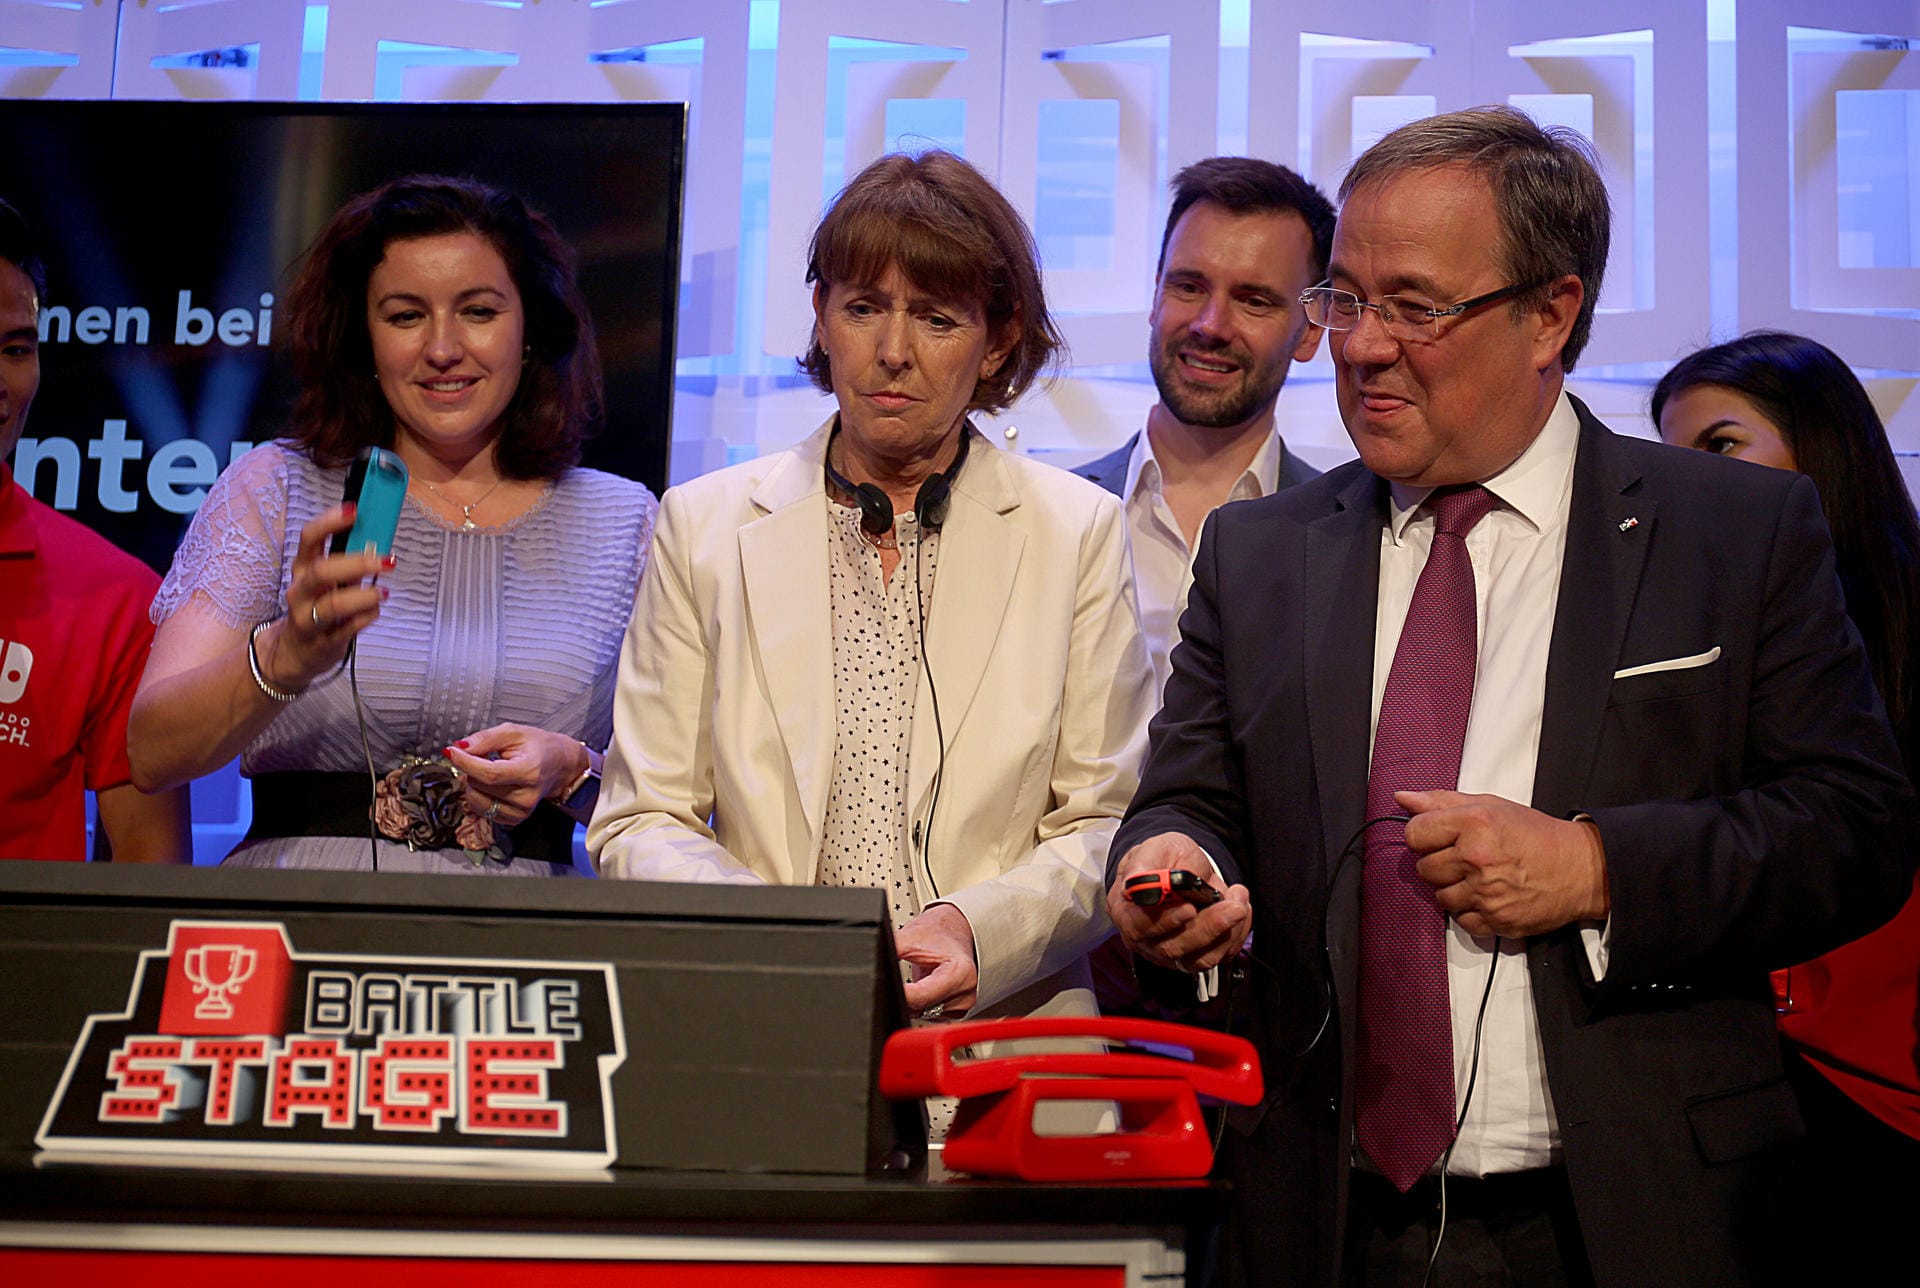 Dorothee Bär, Staatsministerin für Digitalisierung (l, CSU), Henriette Reker, Oberbürgermeisterin von Köln (M) und Armin Laschet (r, CDU), NRW-Ministerpräsident spielen auf dem Stand von Nintendo Battle Stage.